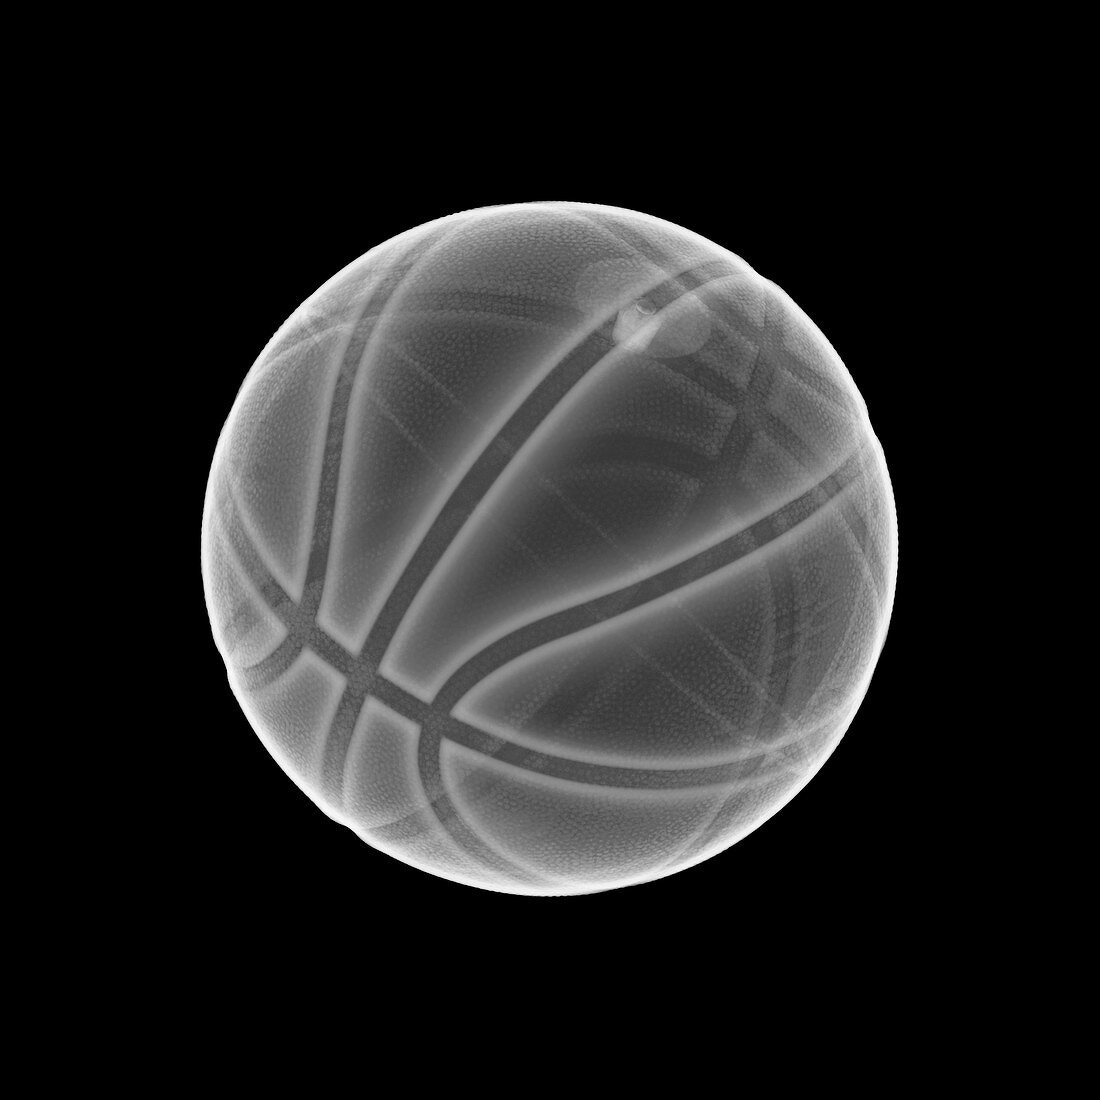 Basketball, X-ray